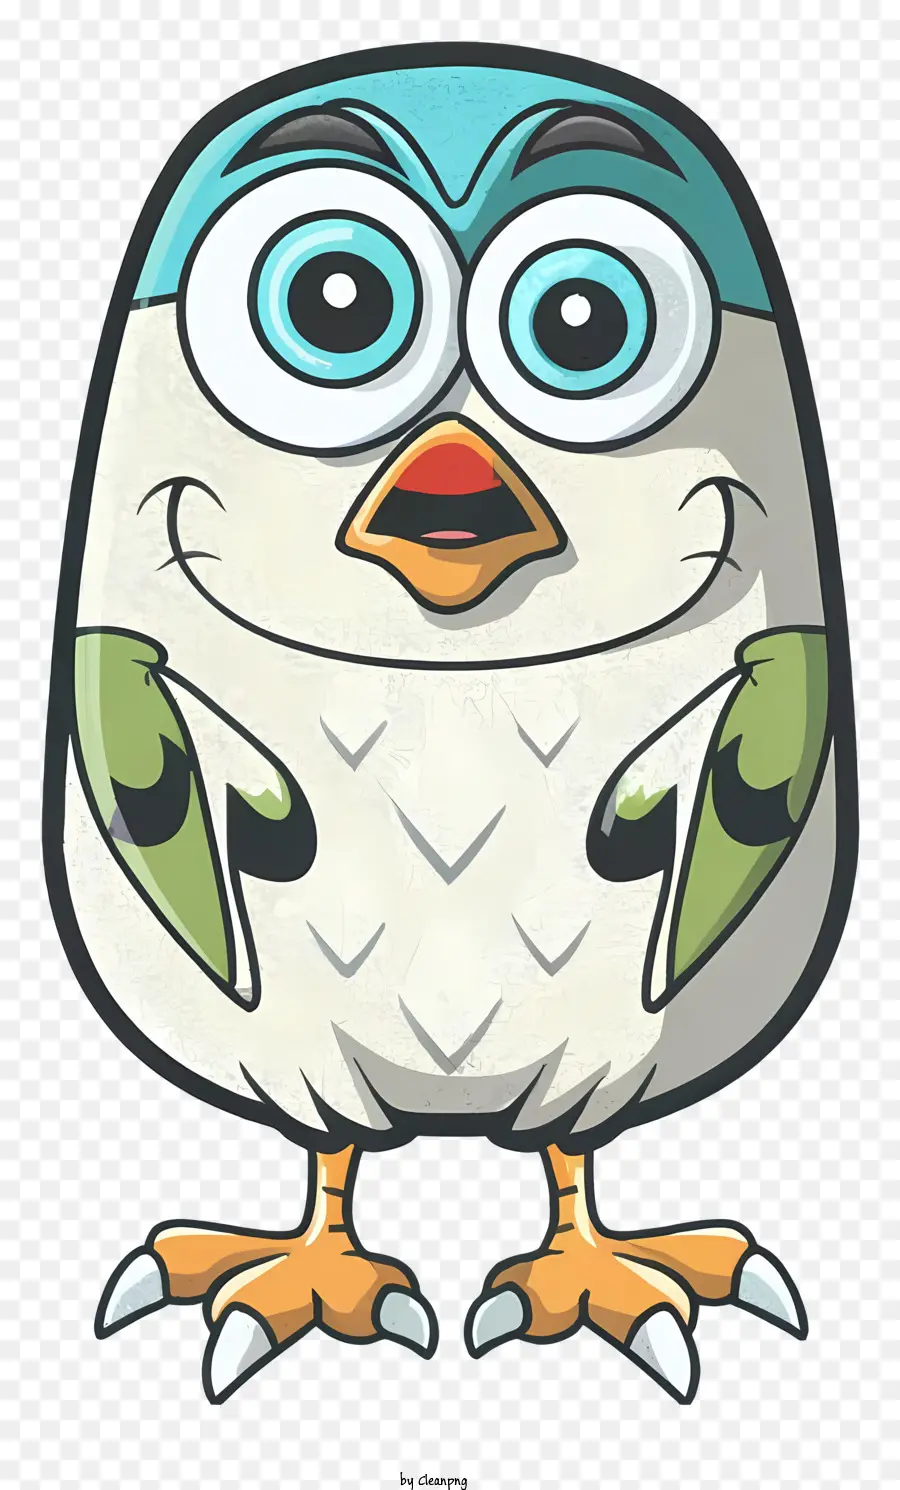 cartoon uccello - Uccello cartone animato con occhi grandi e sorridenti